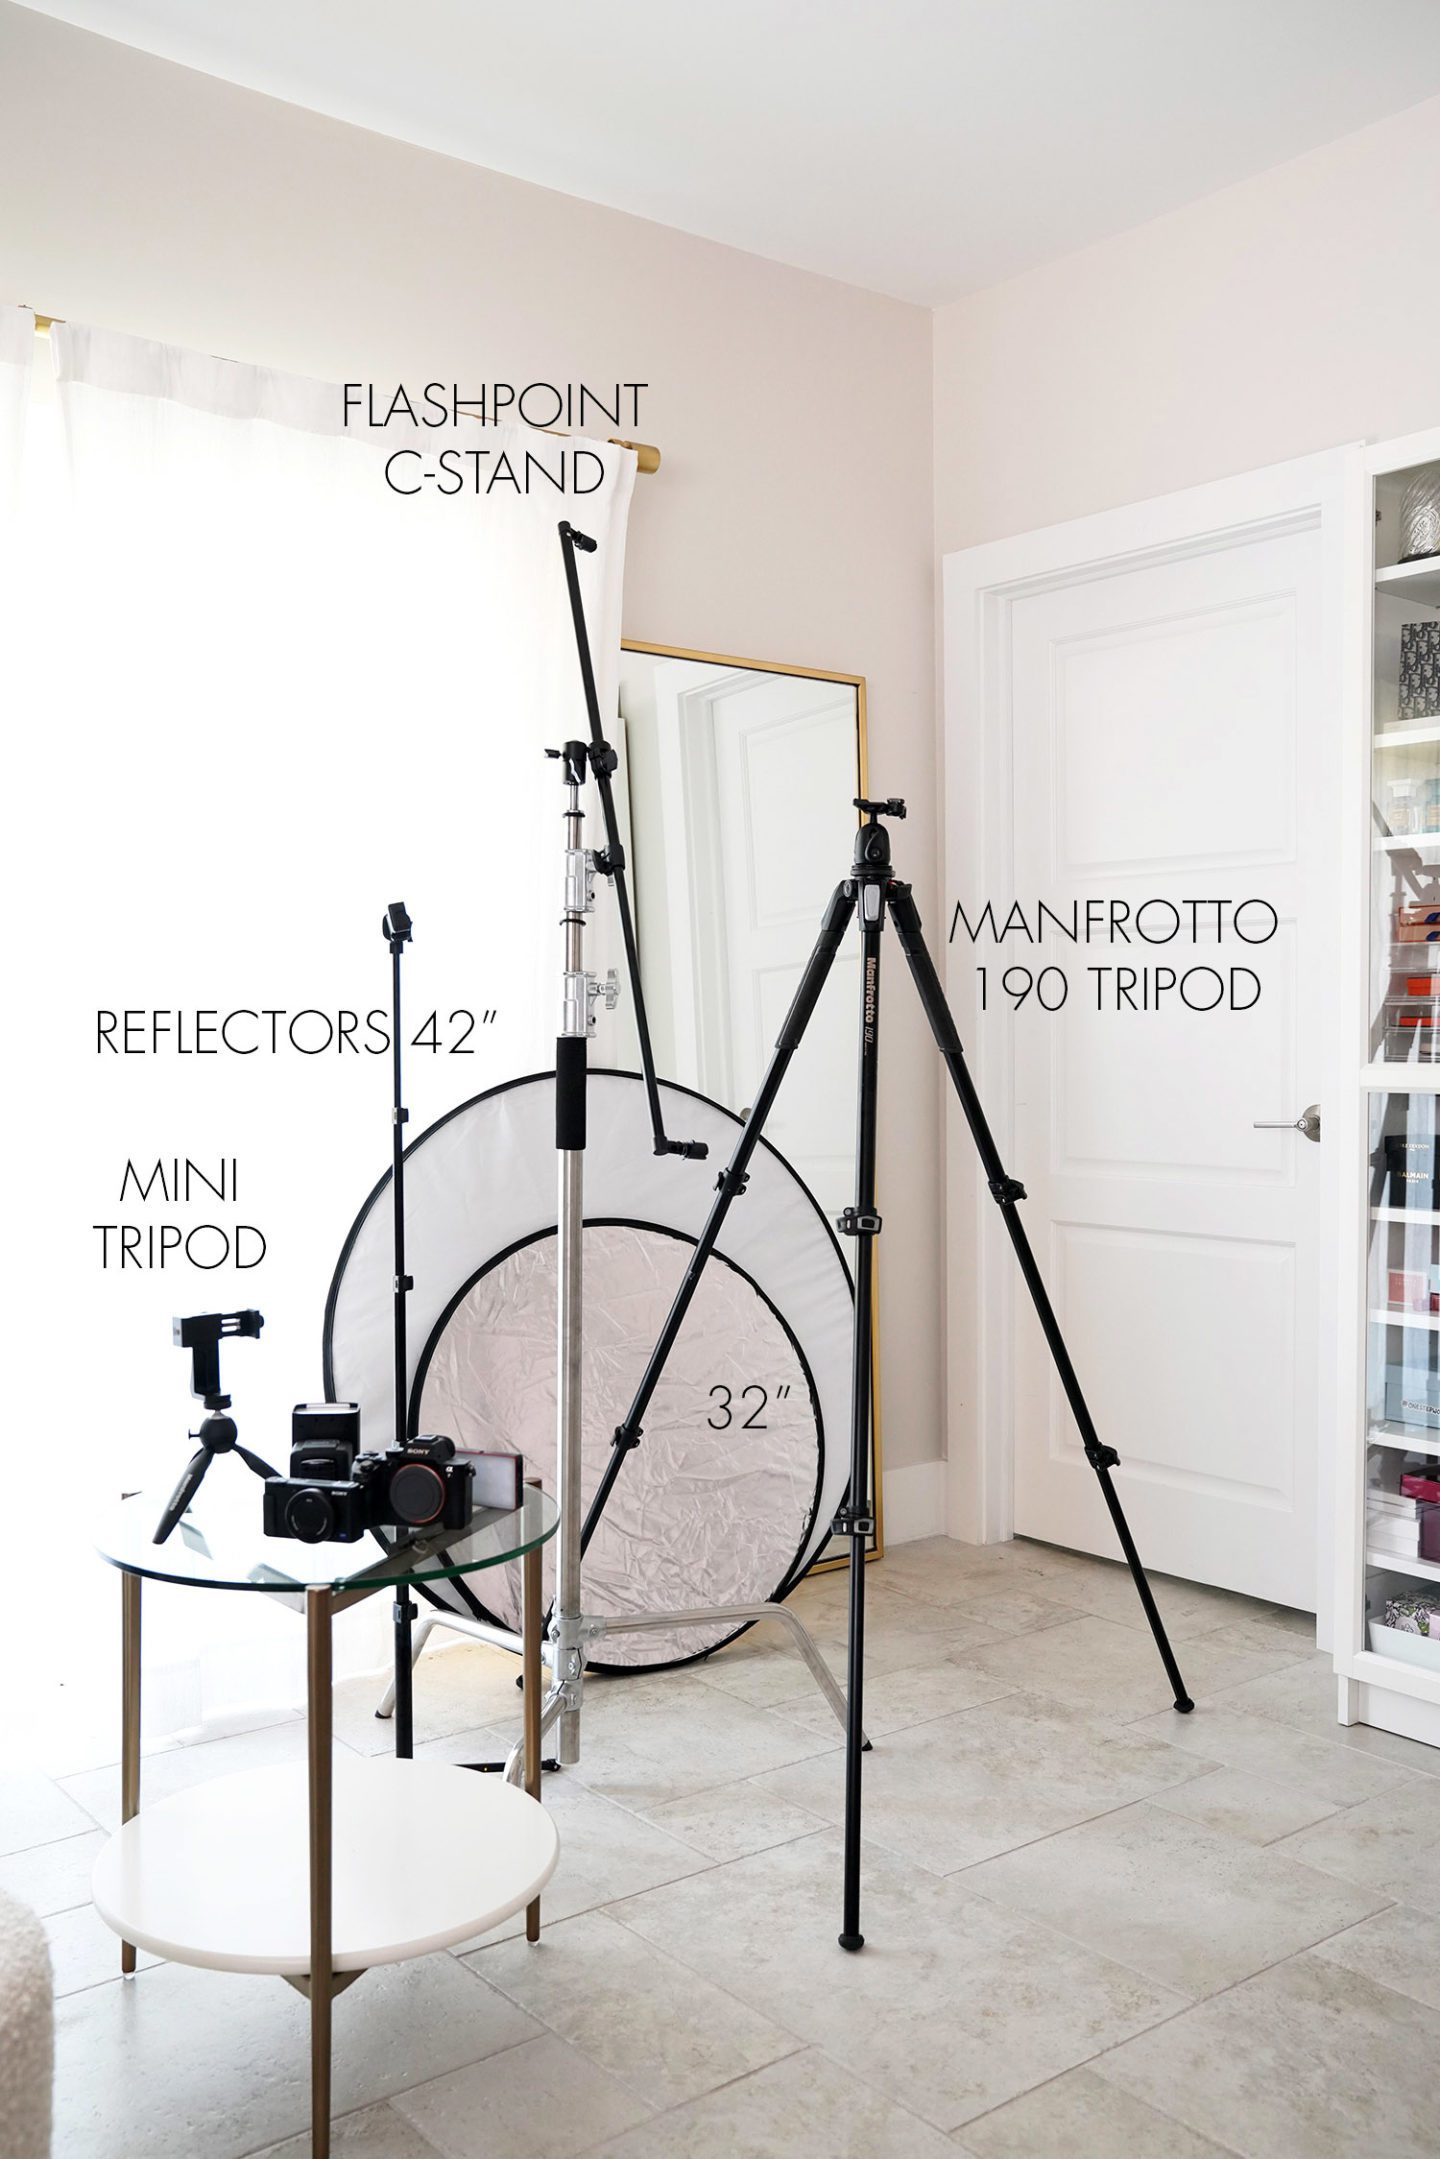 Tripod, Reflectors, Cameras, Equipment and Editing Tools | The Beauty Look Book